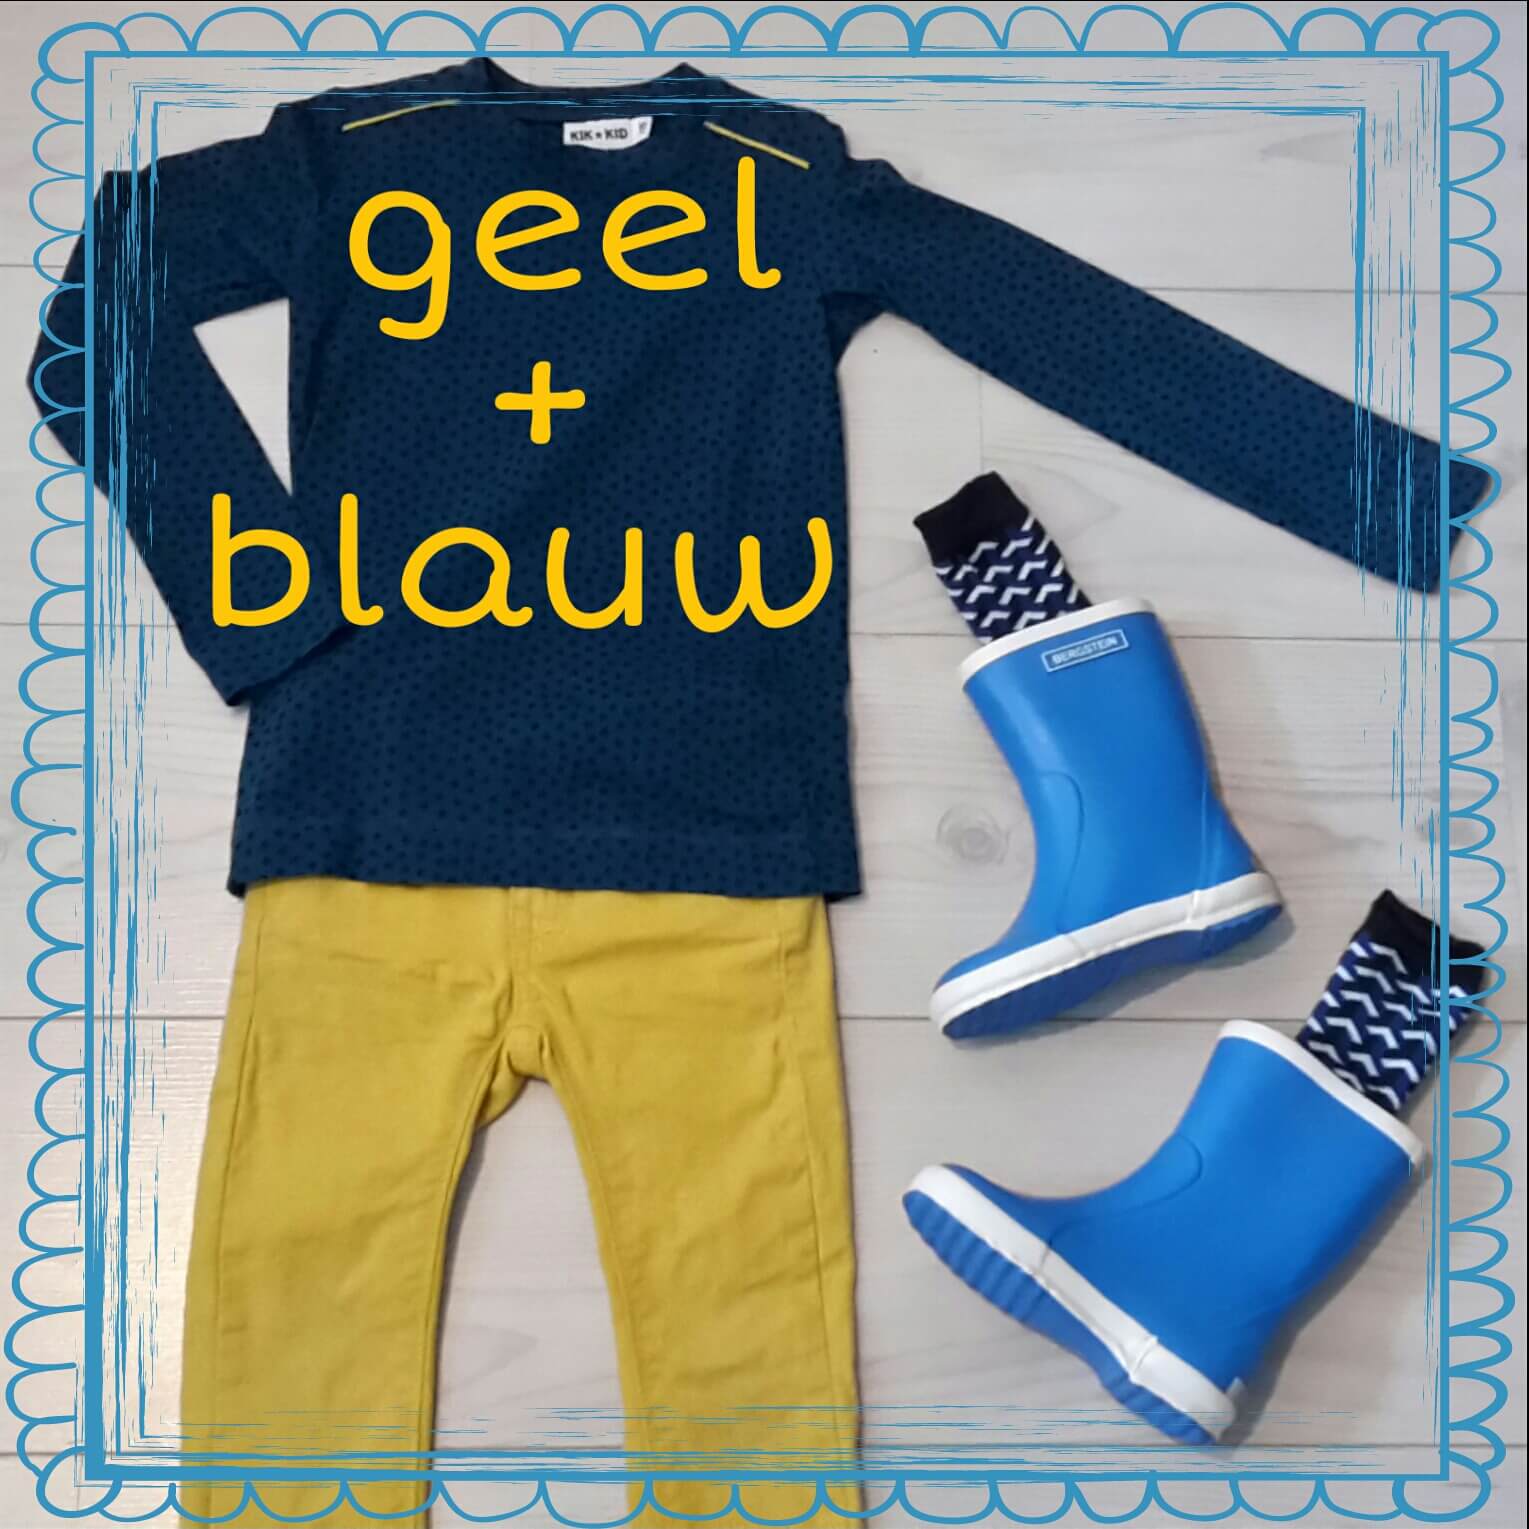 Stoere outfits in blauw + geel voor jongens en meisjes